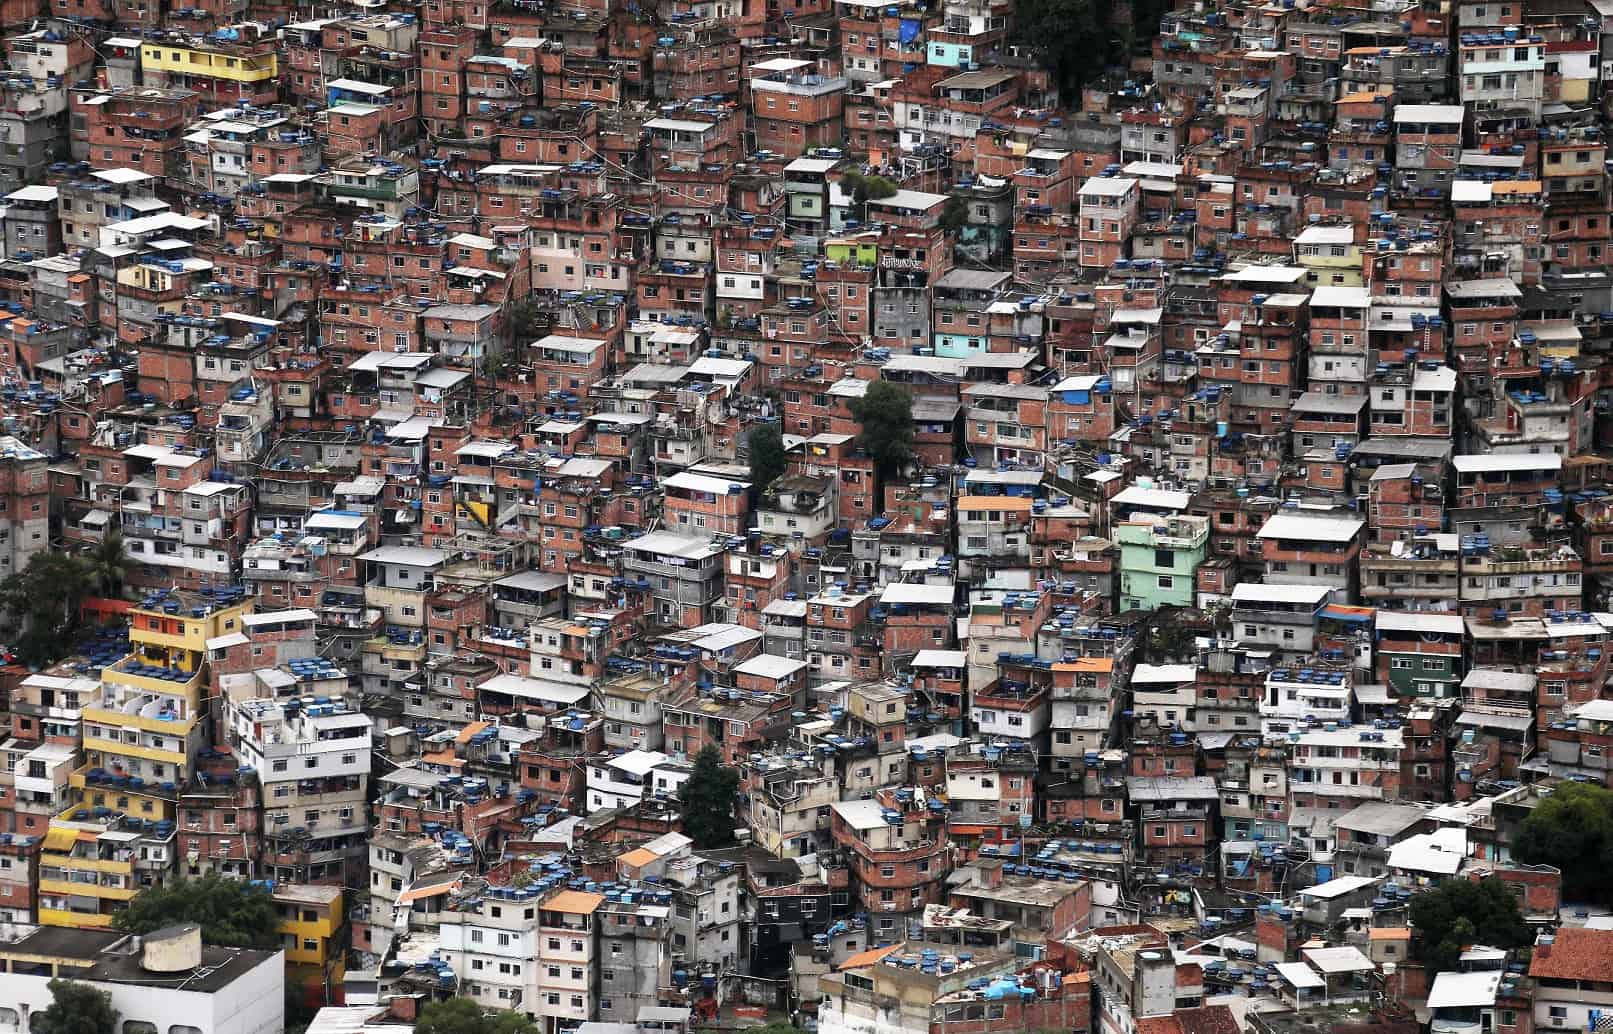 The favelas (slums) in Rio De Janeiro